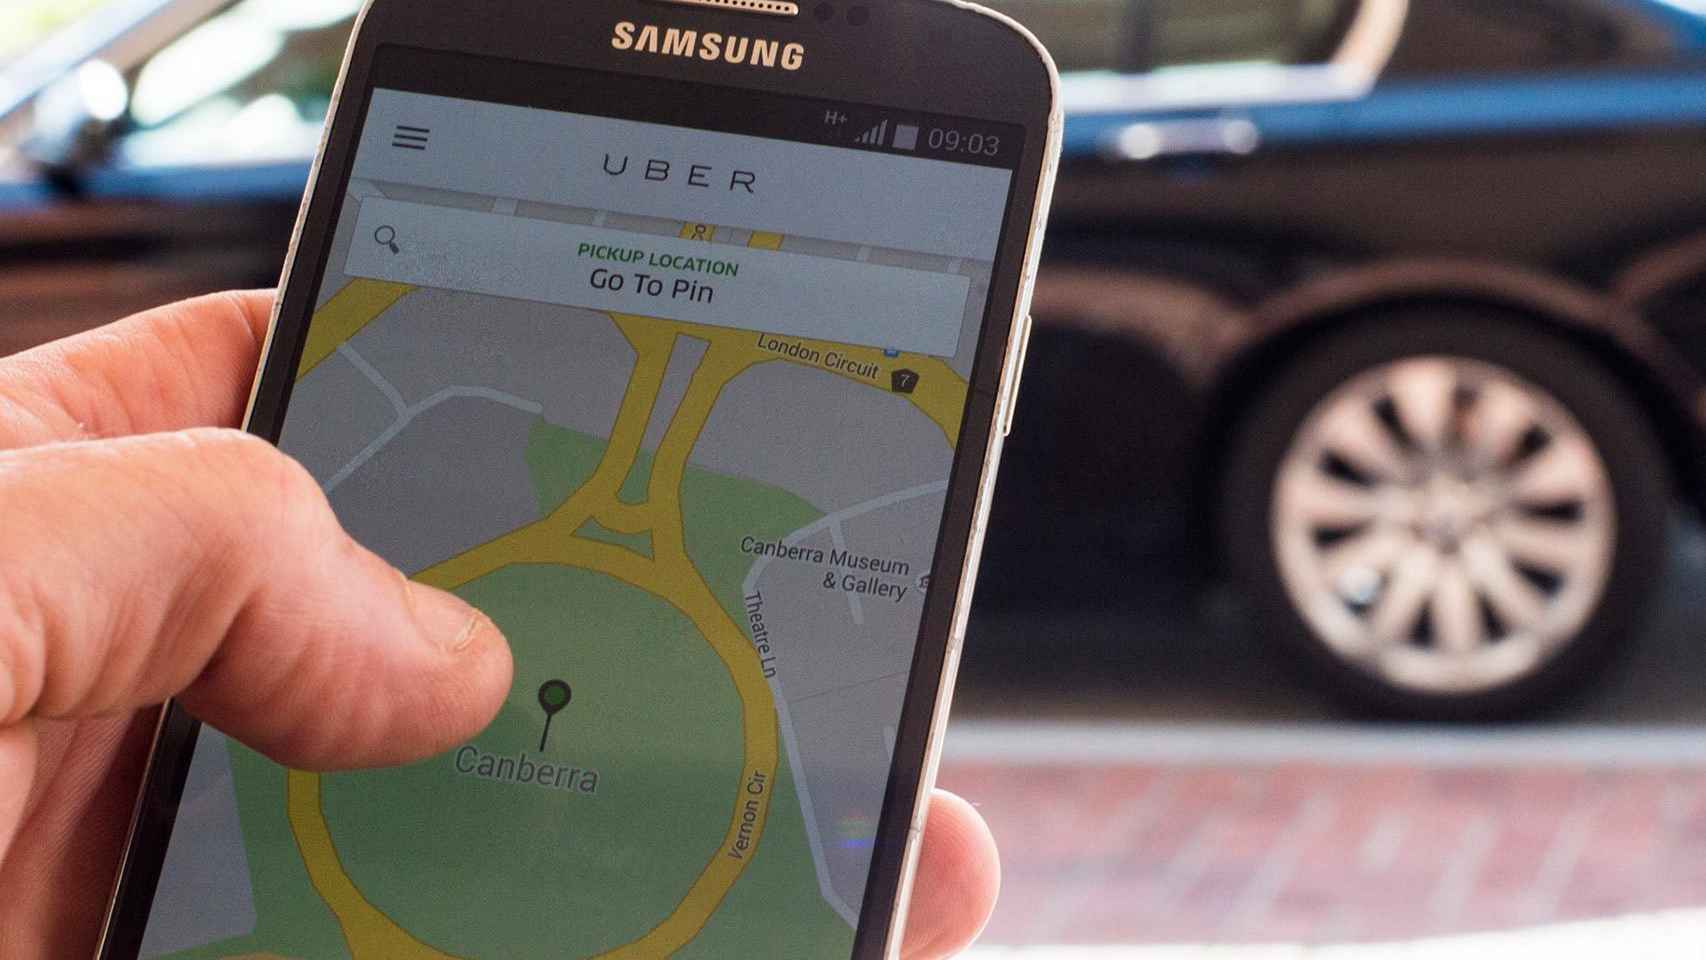 Uber quire expandirse por España y pone su foco en Barcelona